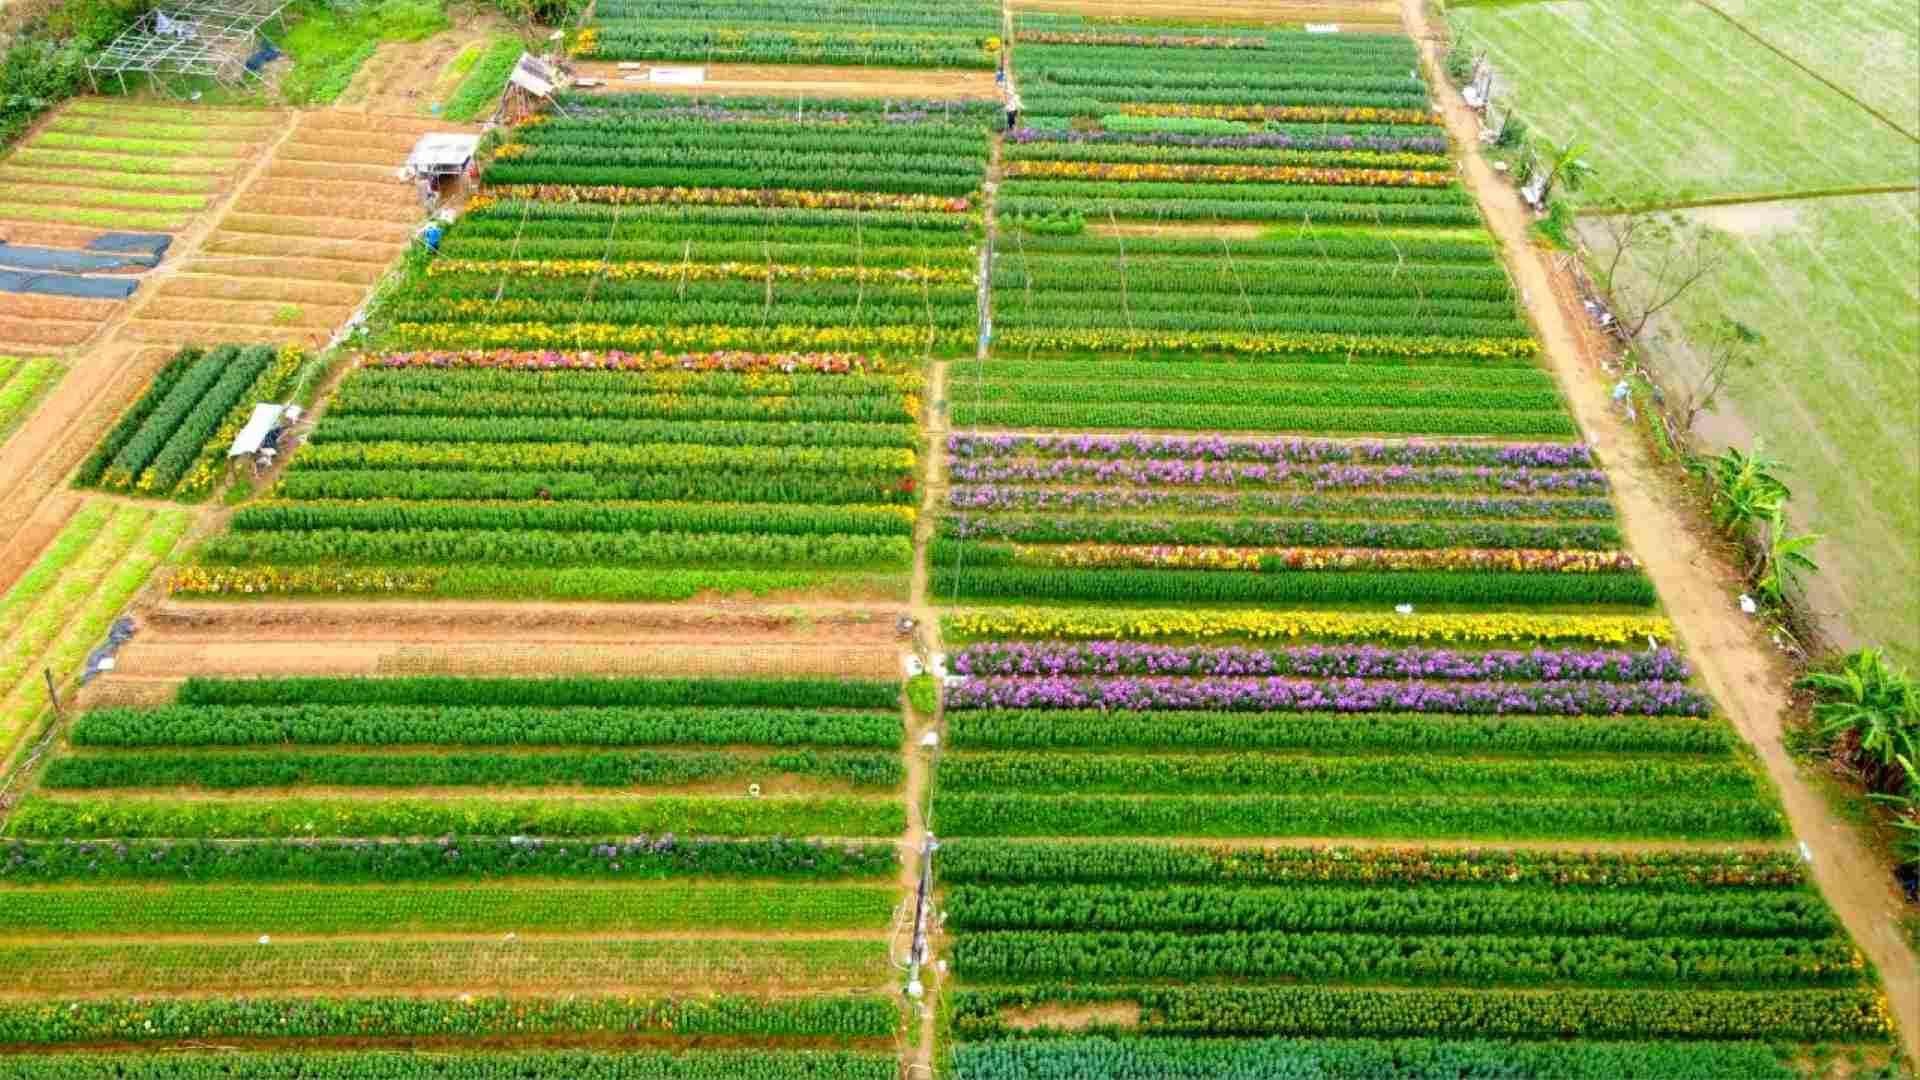 Xã Phú Mậu (TP. Huế) là địa phương có truyền thống trồng hoa quanh năm, là một trong những vựa hoa có quy mô lớn nhất tỉnh Thừa Thiên Huế, đặc biệt là dịp Tết Nguyên đán, vùng quê này tràn ngập trong sắc hoa cùng với khung cảnh nhộn nhịp của người mua, người bán. 